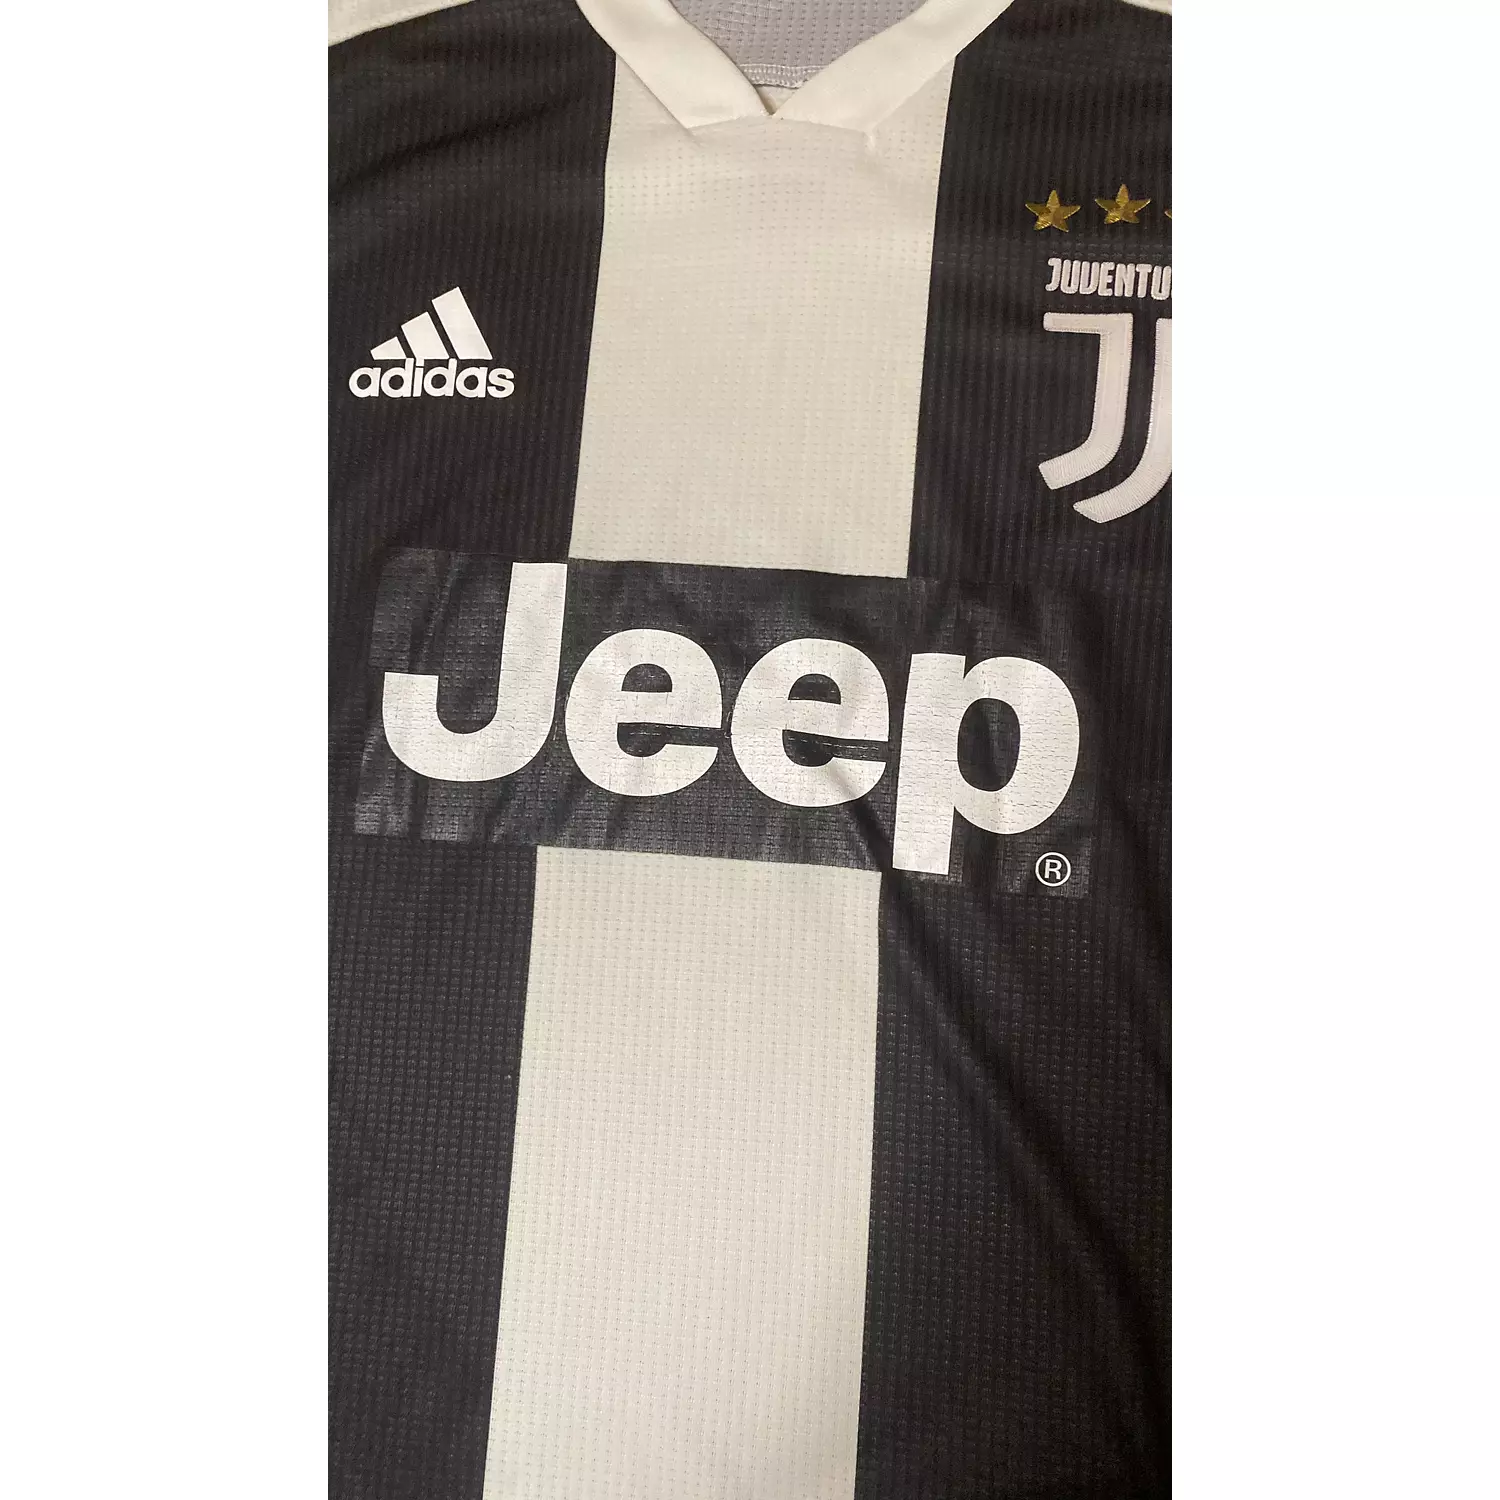 Juventus 2018/19 Home Kit (S)  2